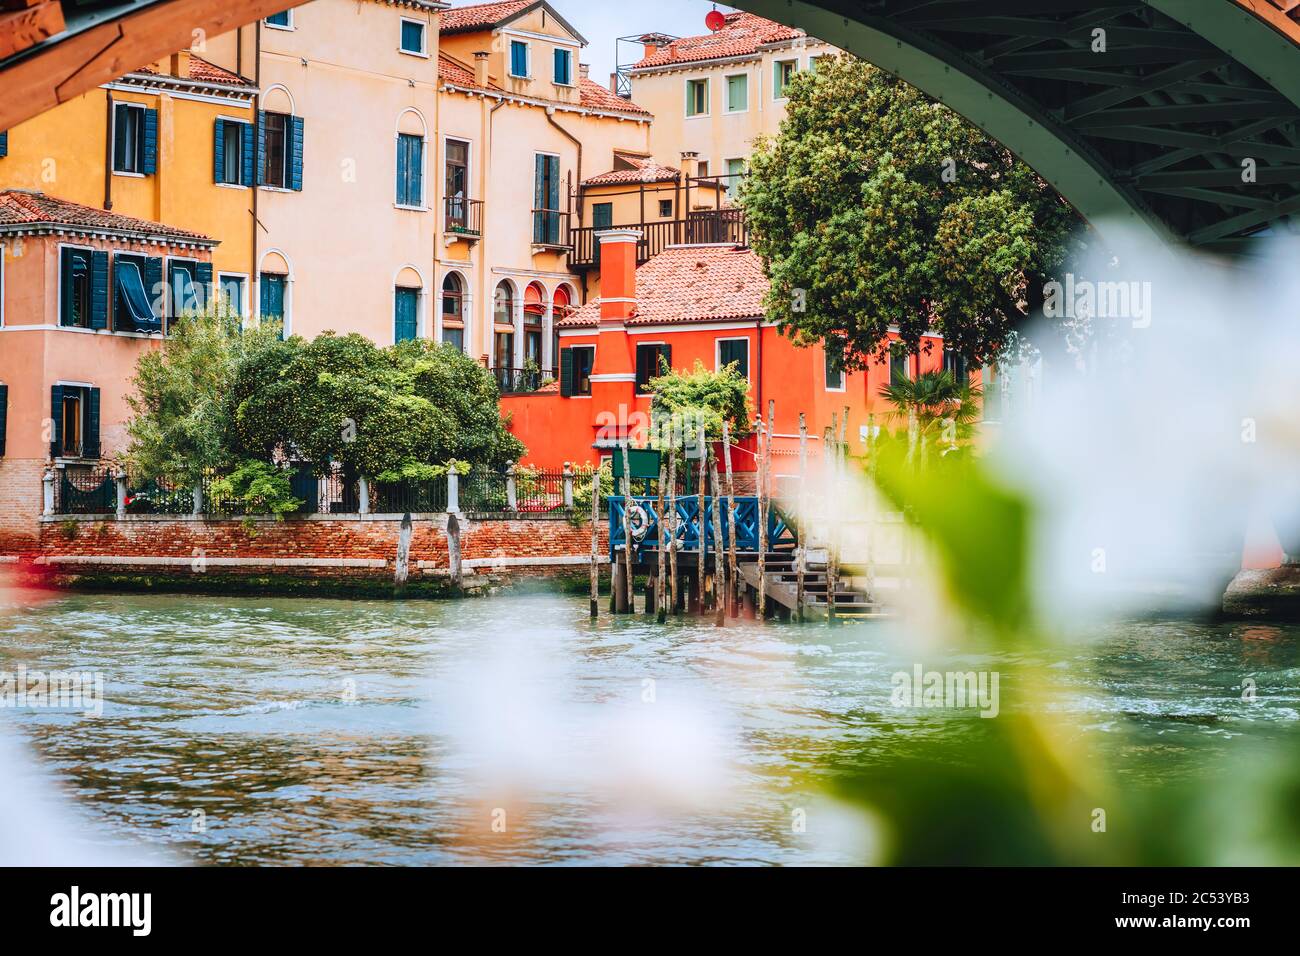 Antiche facciate di case sul Canal Grande, Venezia, Italia. Vintage edifici storici di architettura di Venezia sull'acqua nella stagione estiva. Foto Stock